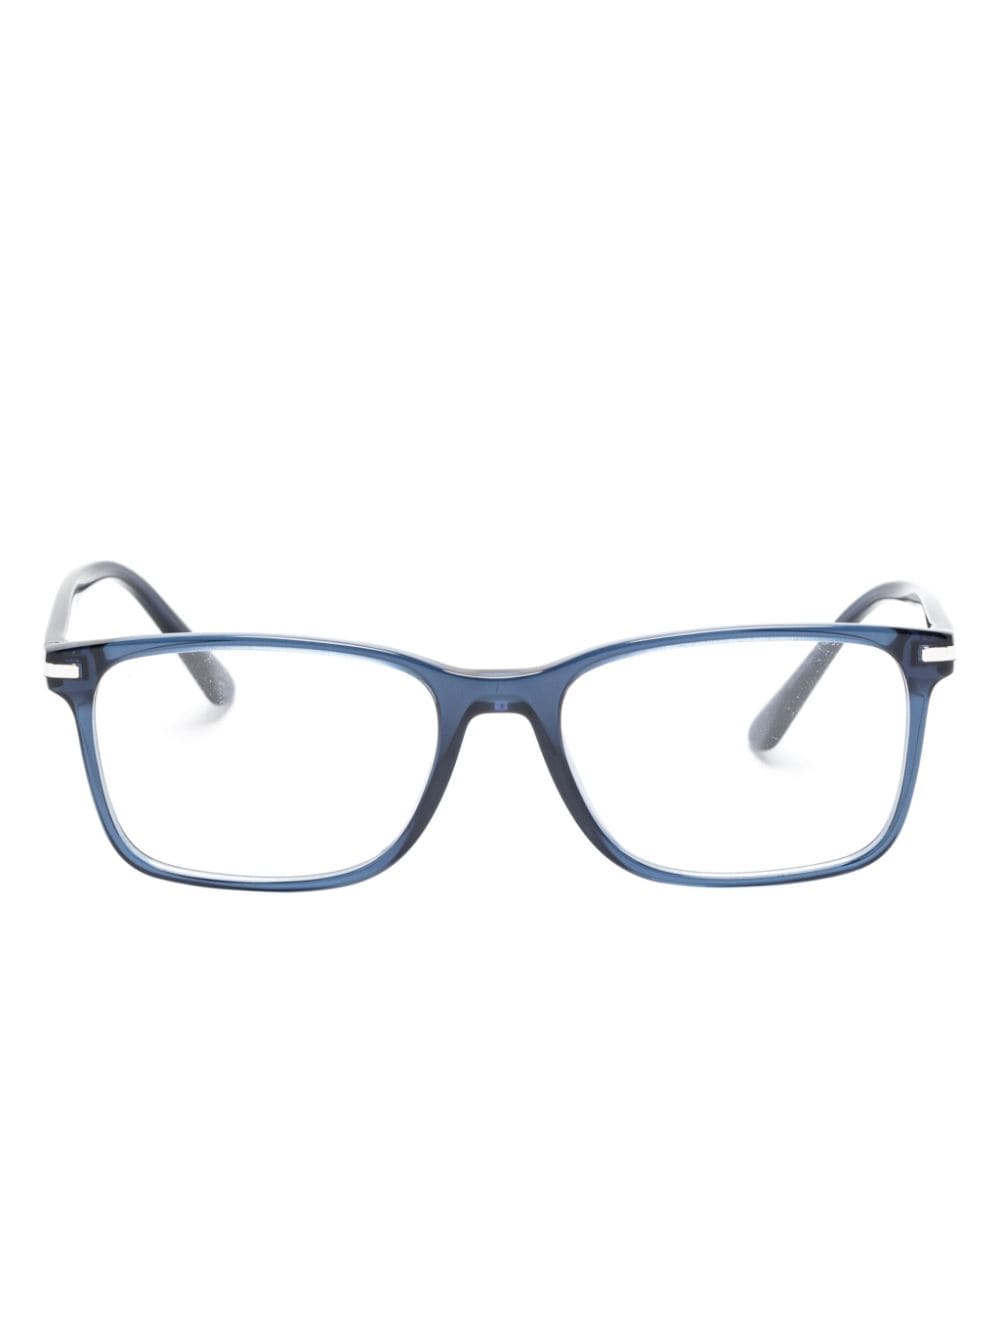 Prada Eyewear Transparente Brille mit eckigem Gestell - Blau von Prada Eyewear